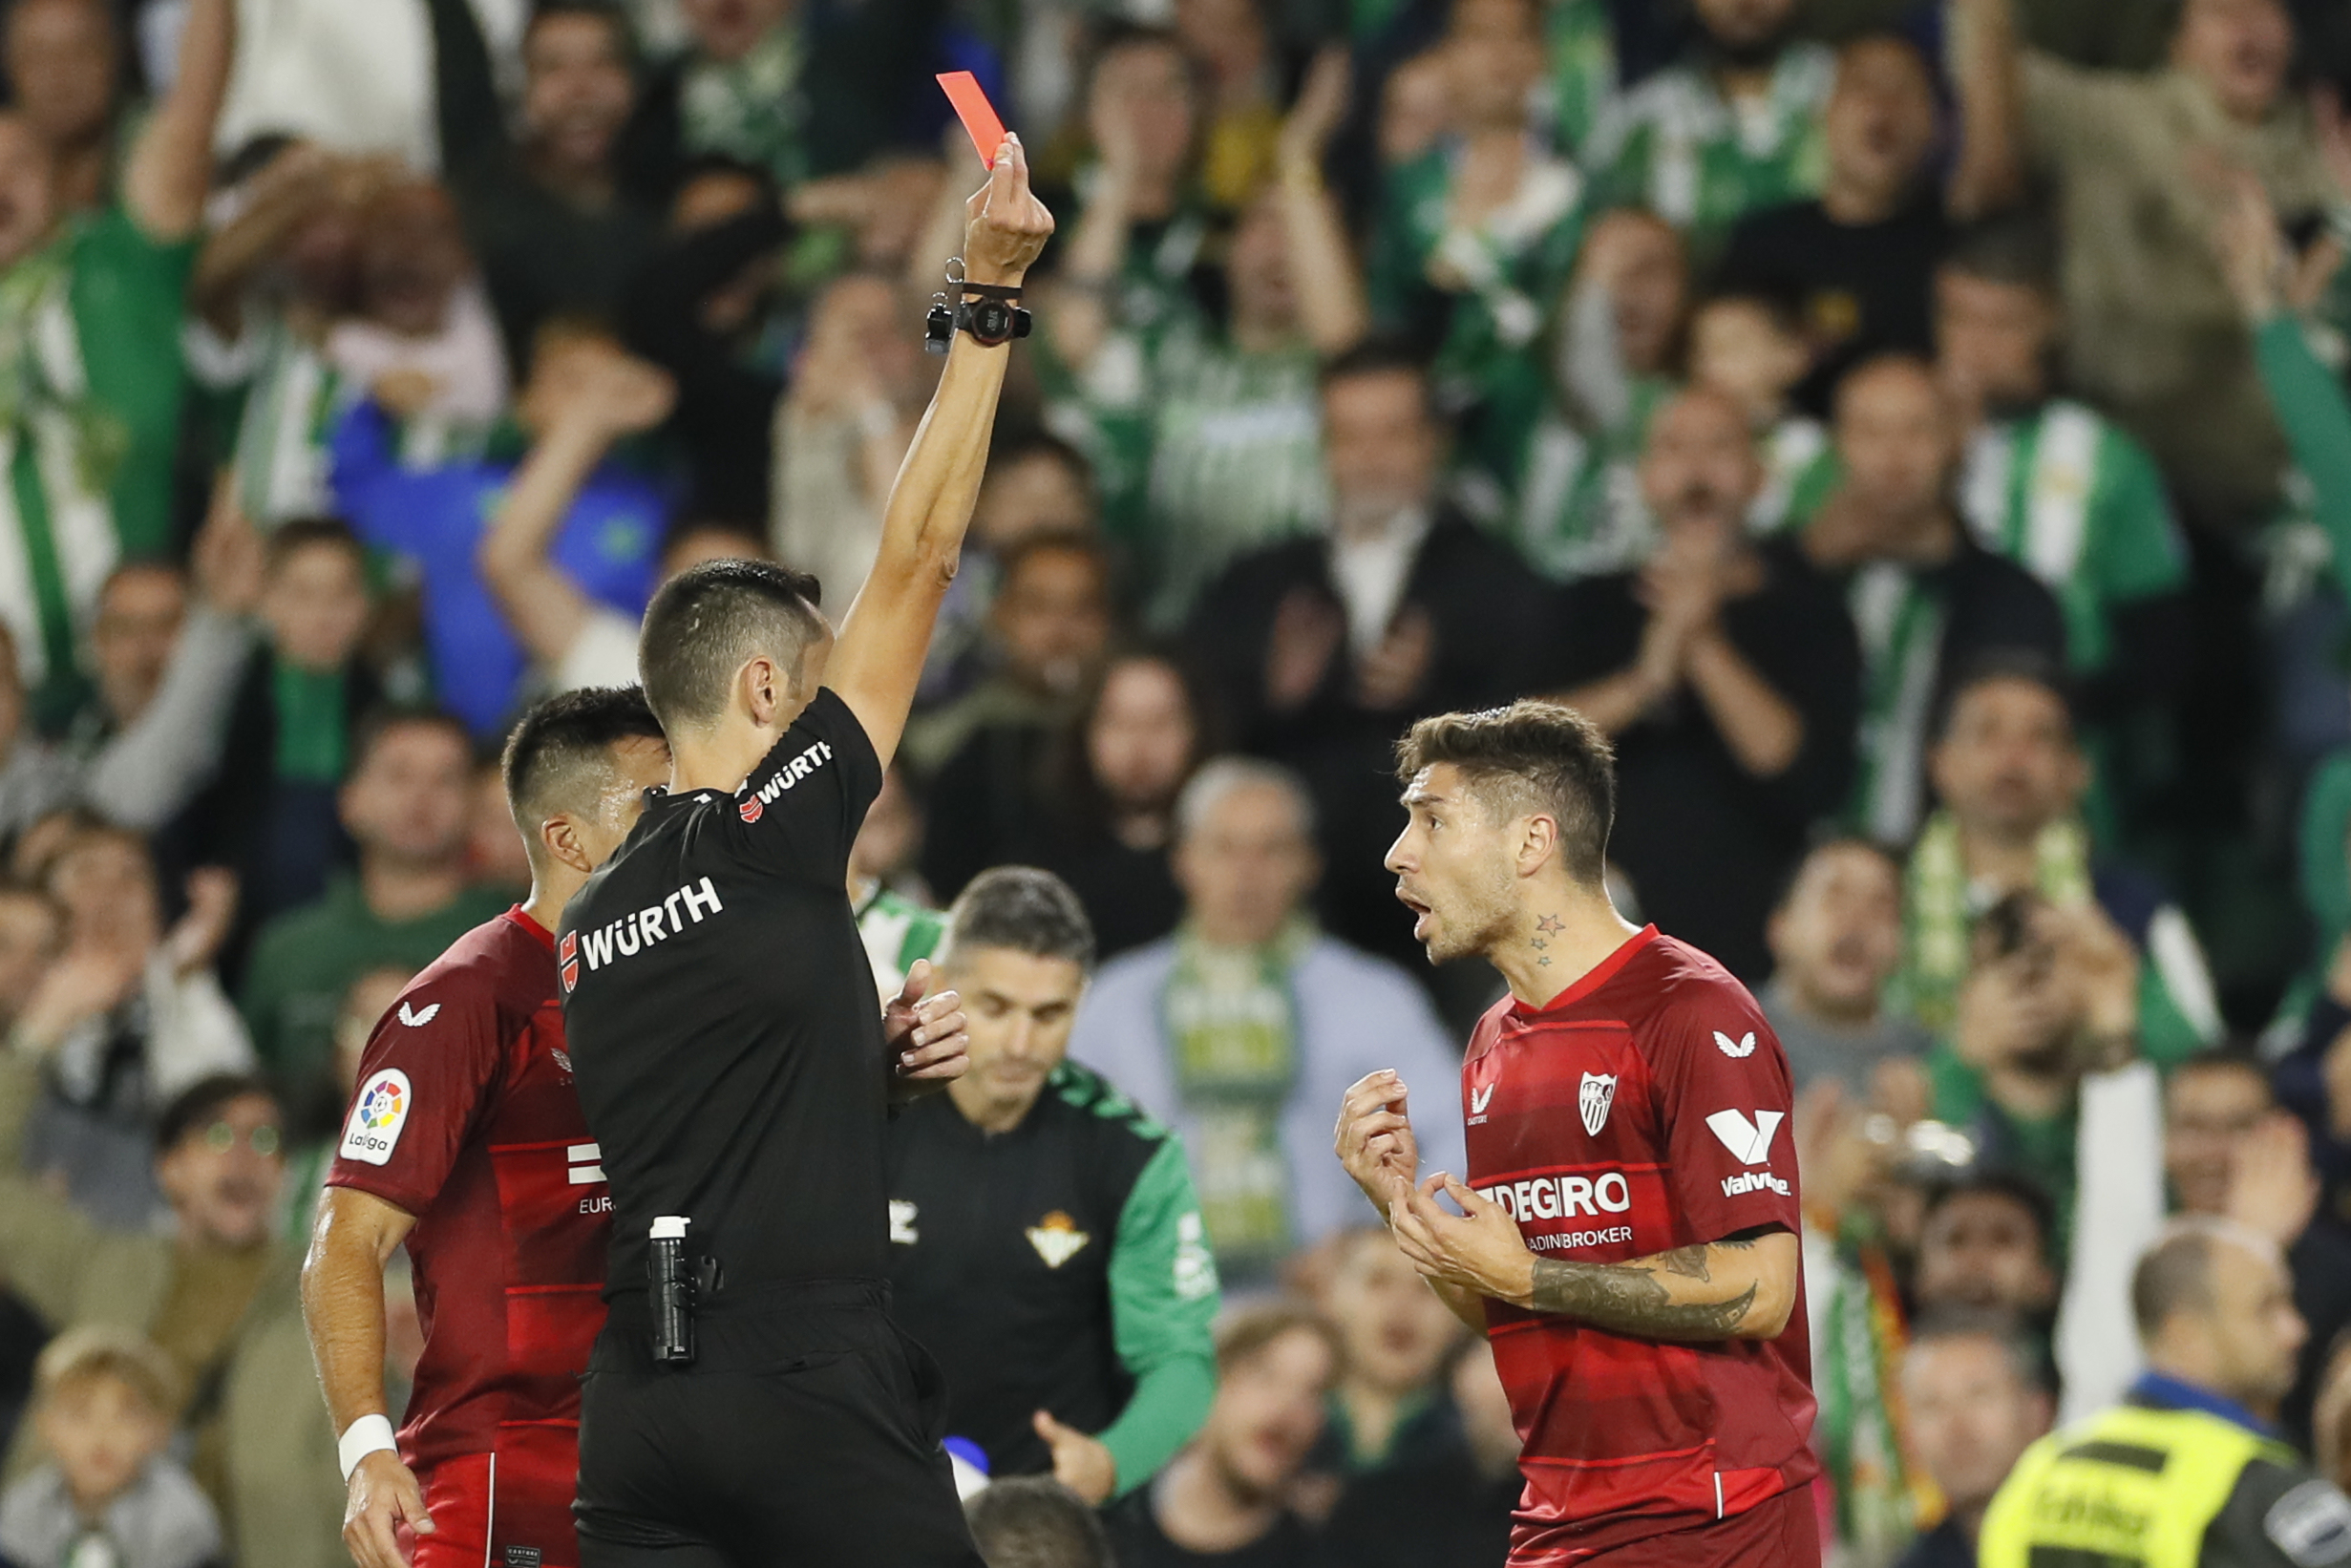 Un rbitro muestra la tarjeta roja a Montiel durante un partido del Sevilla.